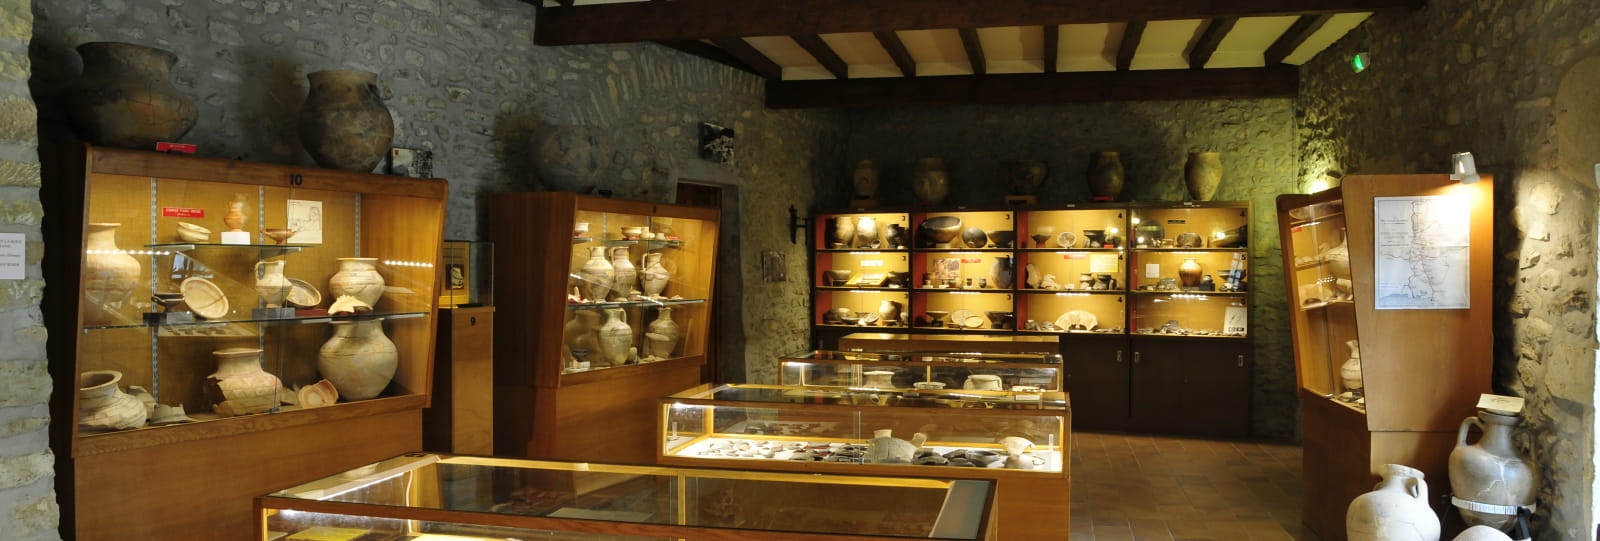 Salle d'exposition - Musée archéologique - Le Pègue